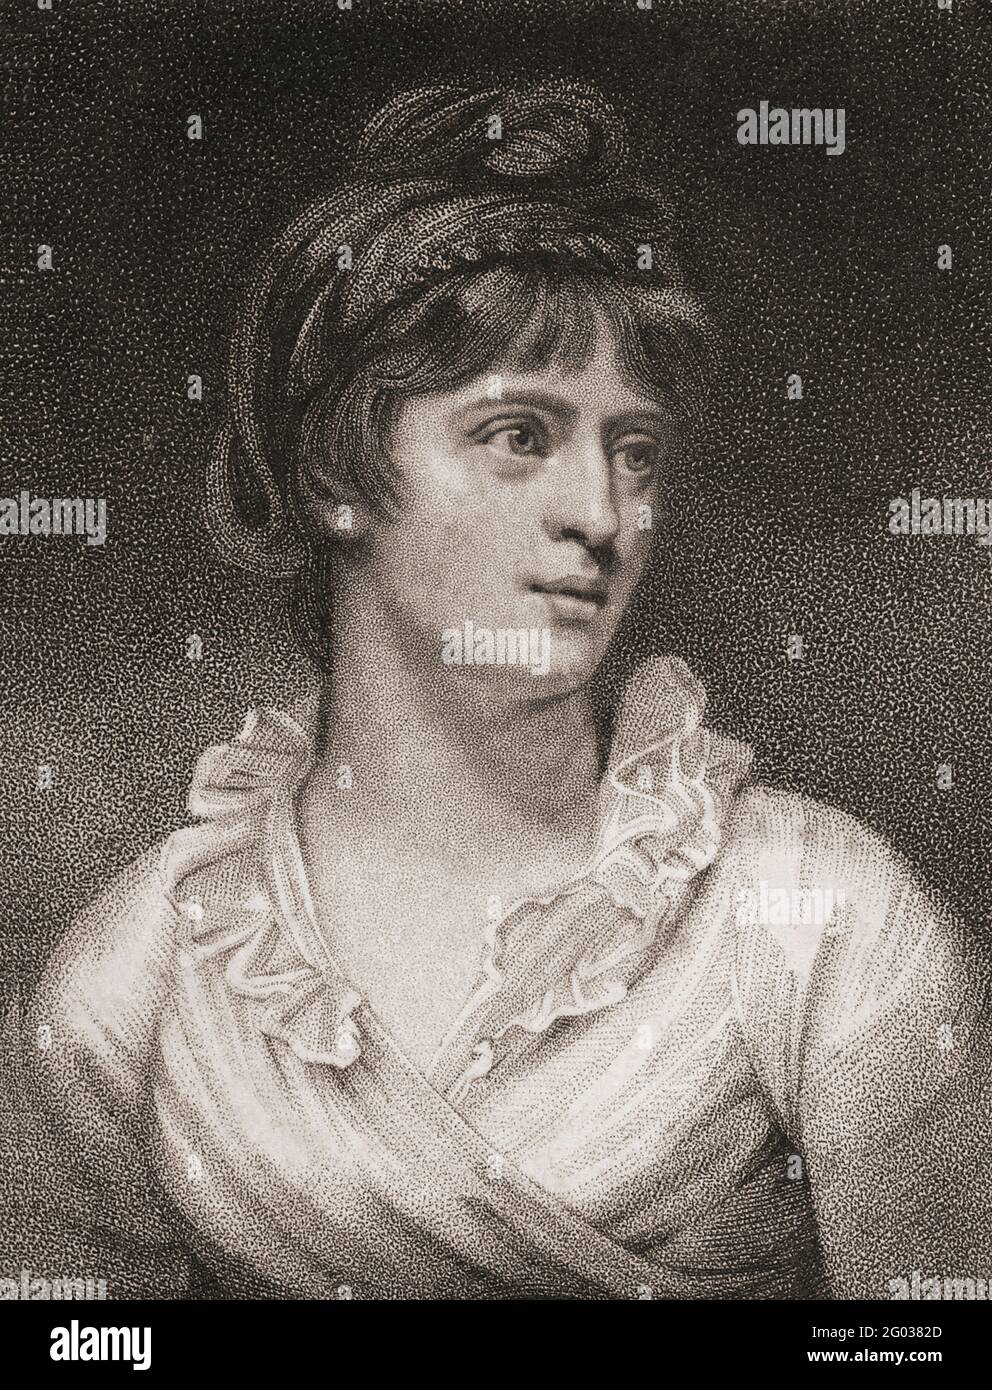 Amelia Opie, nata Alderson, 1769 – 1853. Romanticismo inglese e abolizionista attivo. Dopo un'incisione all'inizio del XIX secolo. Foto Stock